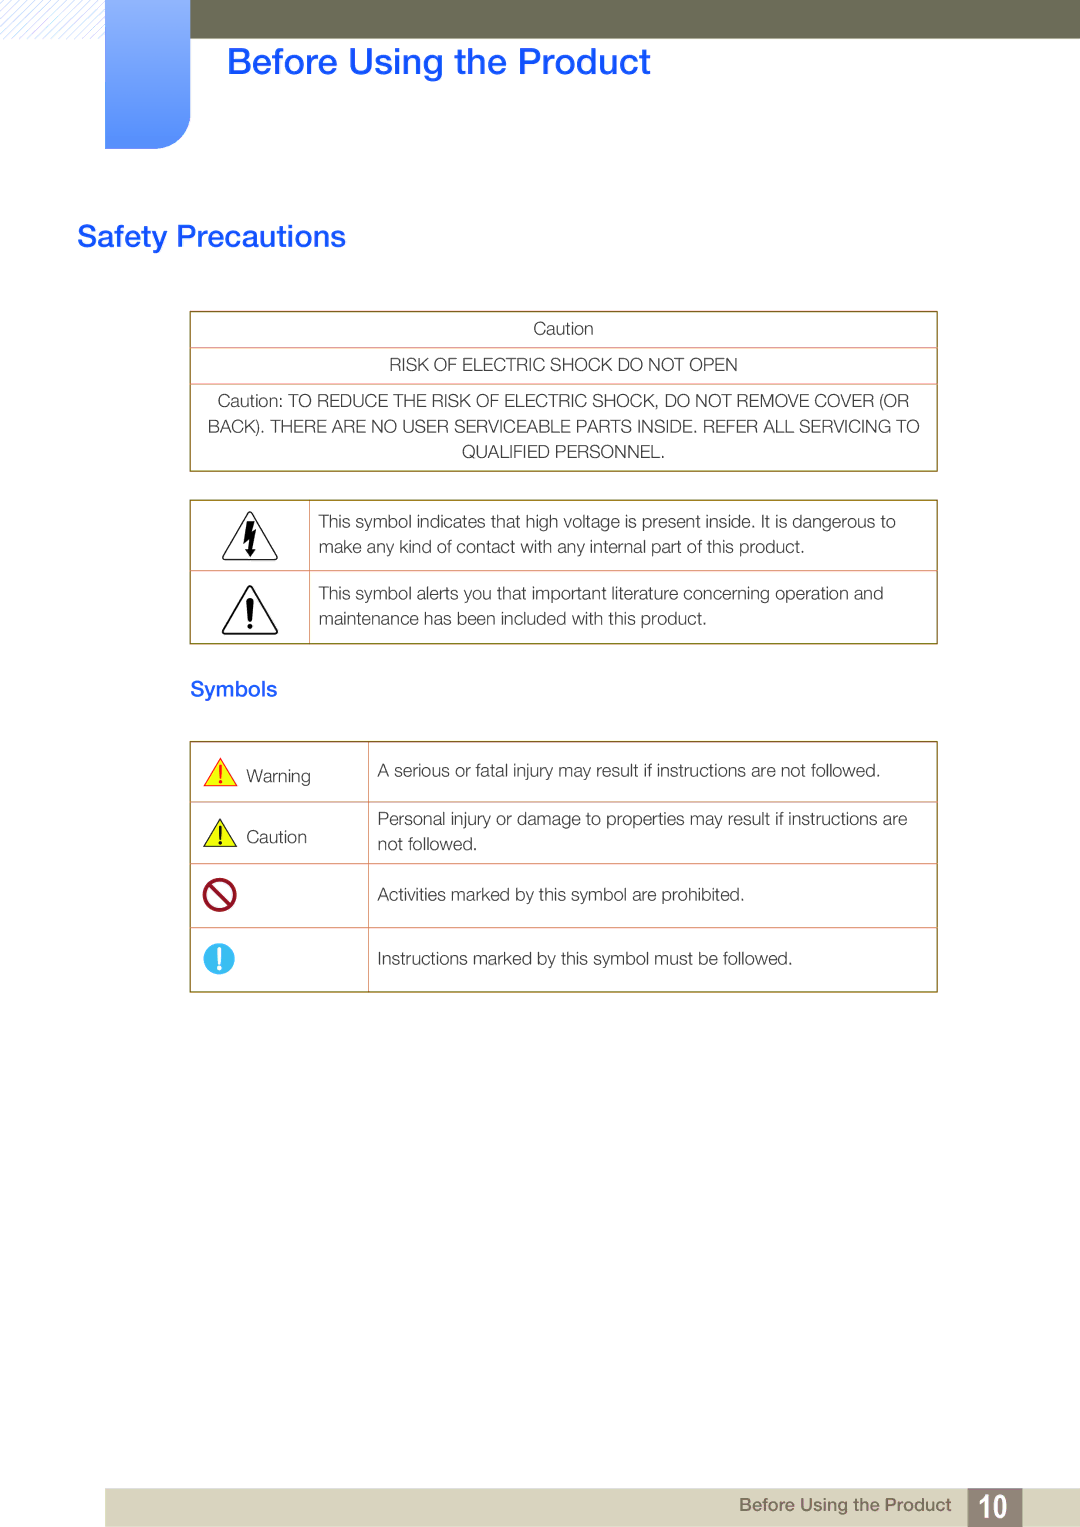 Samsung LS22E360HS/ZR, LS27E390HS/EN, LS24E390HL/EN, LS24E391HL/EN, LS22E390HS/EN, LS27E391HS/EN Safety Precautions, Symbols 